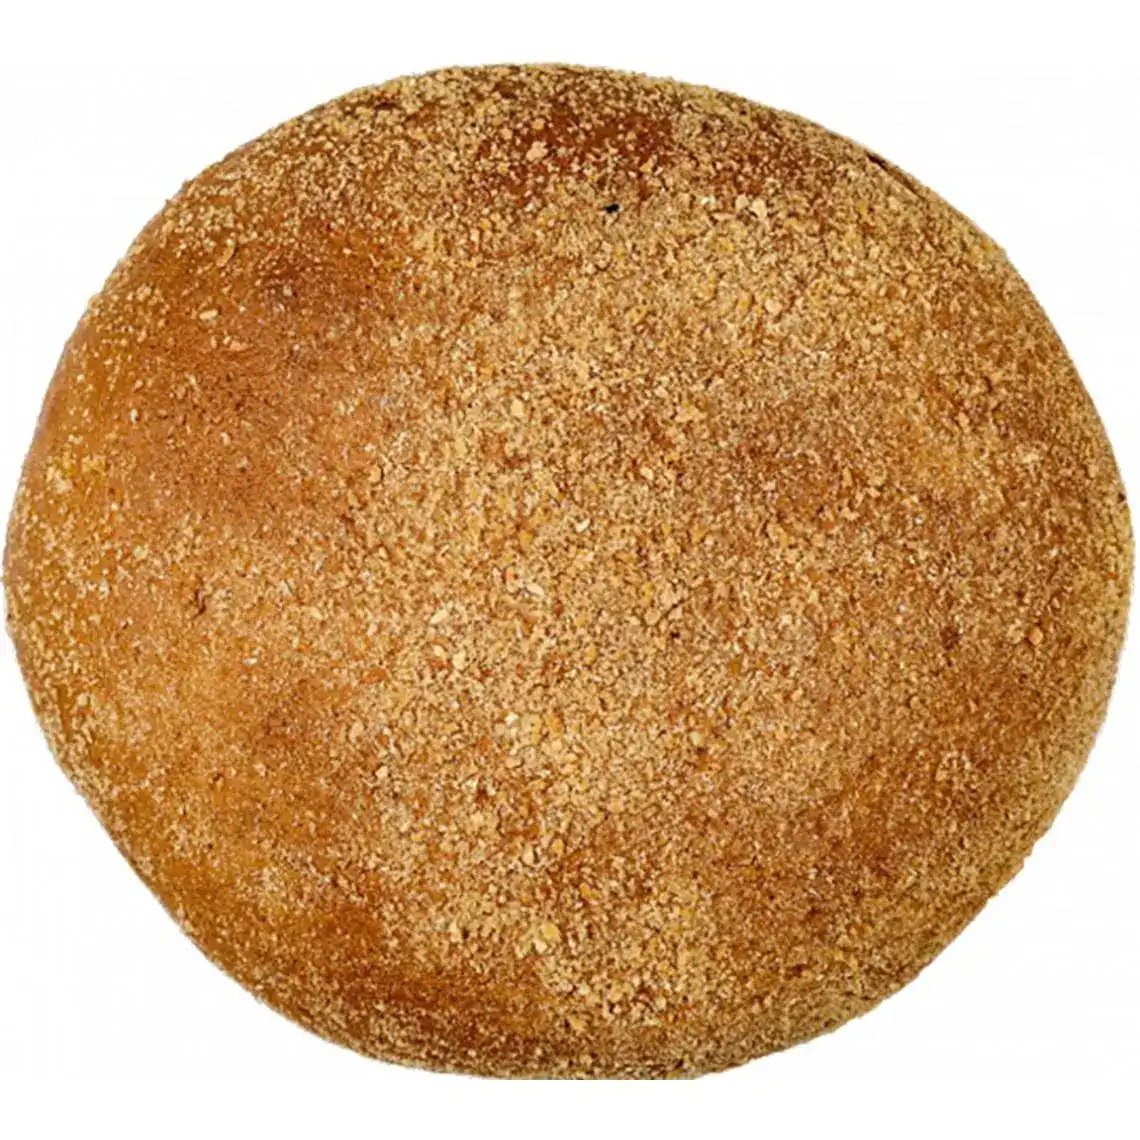 Хліб Дніпровський Хлібокомбінат №3Левобережний житньо-пшеничний 750 г